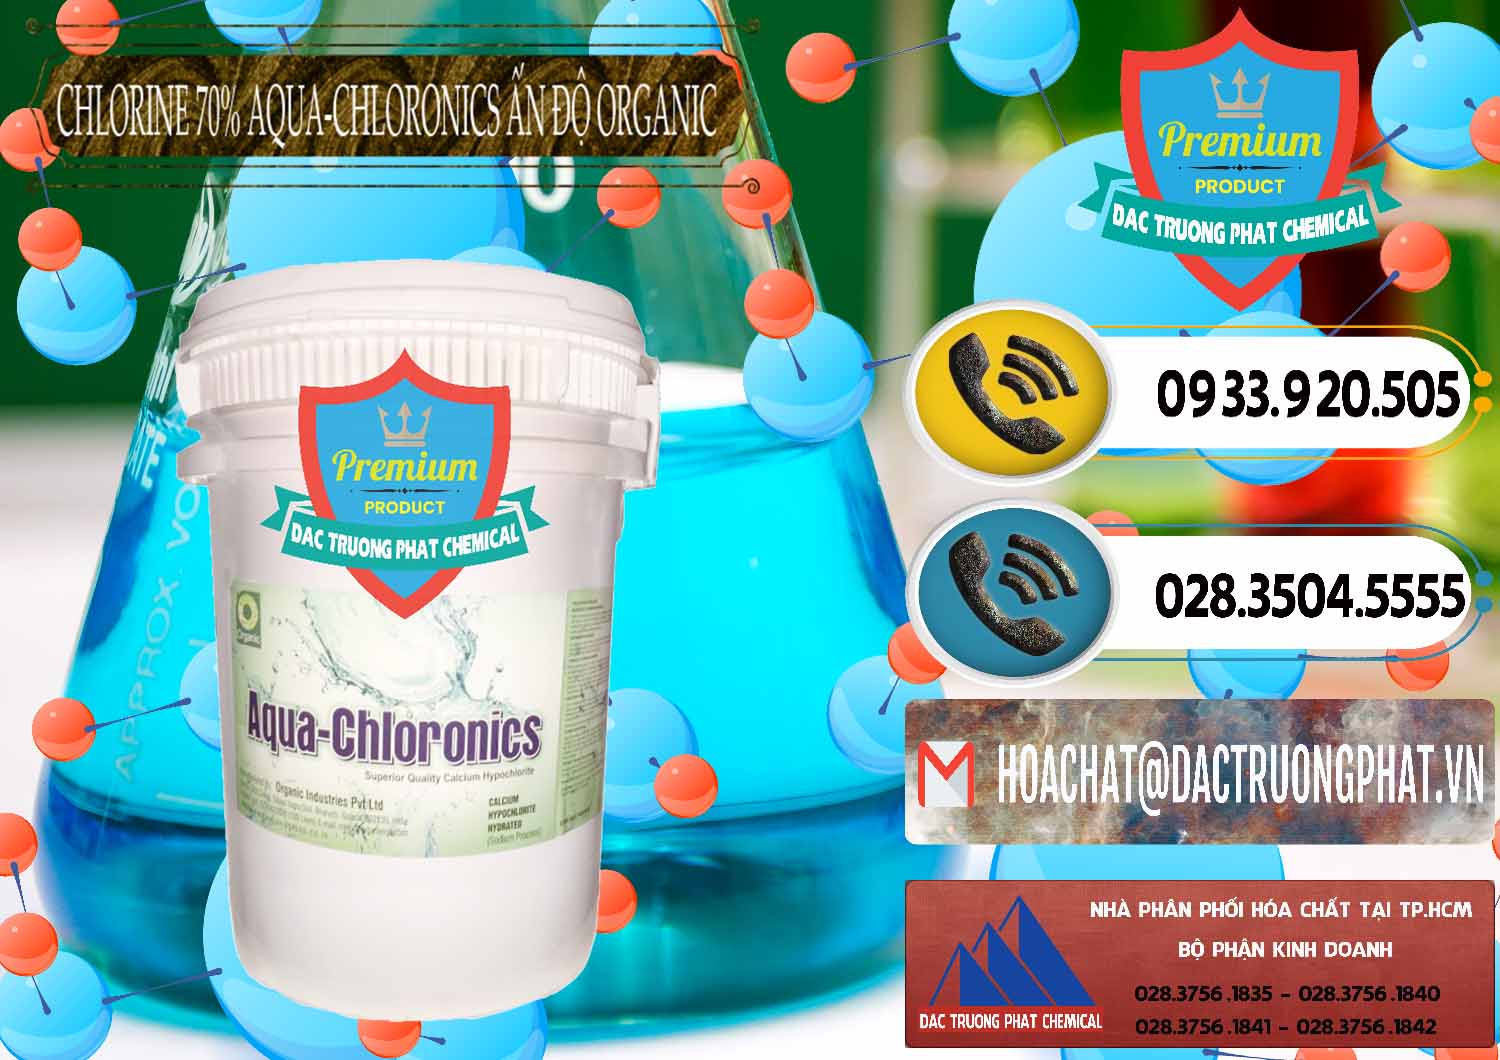 Nơi cung ứng - bán Chlorine – Clorin 70% Aqua-Chloronics Ấn Độ Organic India - 0211 - Chuyên cung cấp ( bán ) hóa chất tại TP.HCM - hoachatdetnhuom.vn